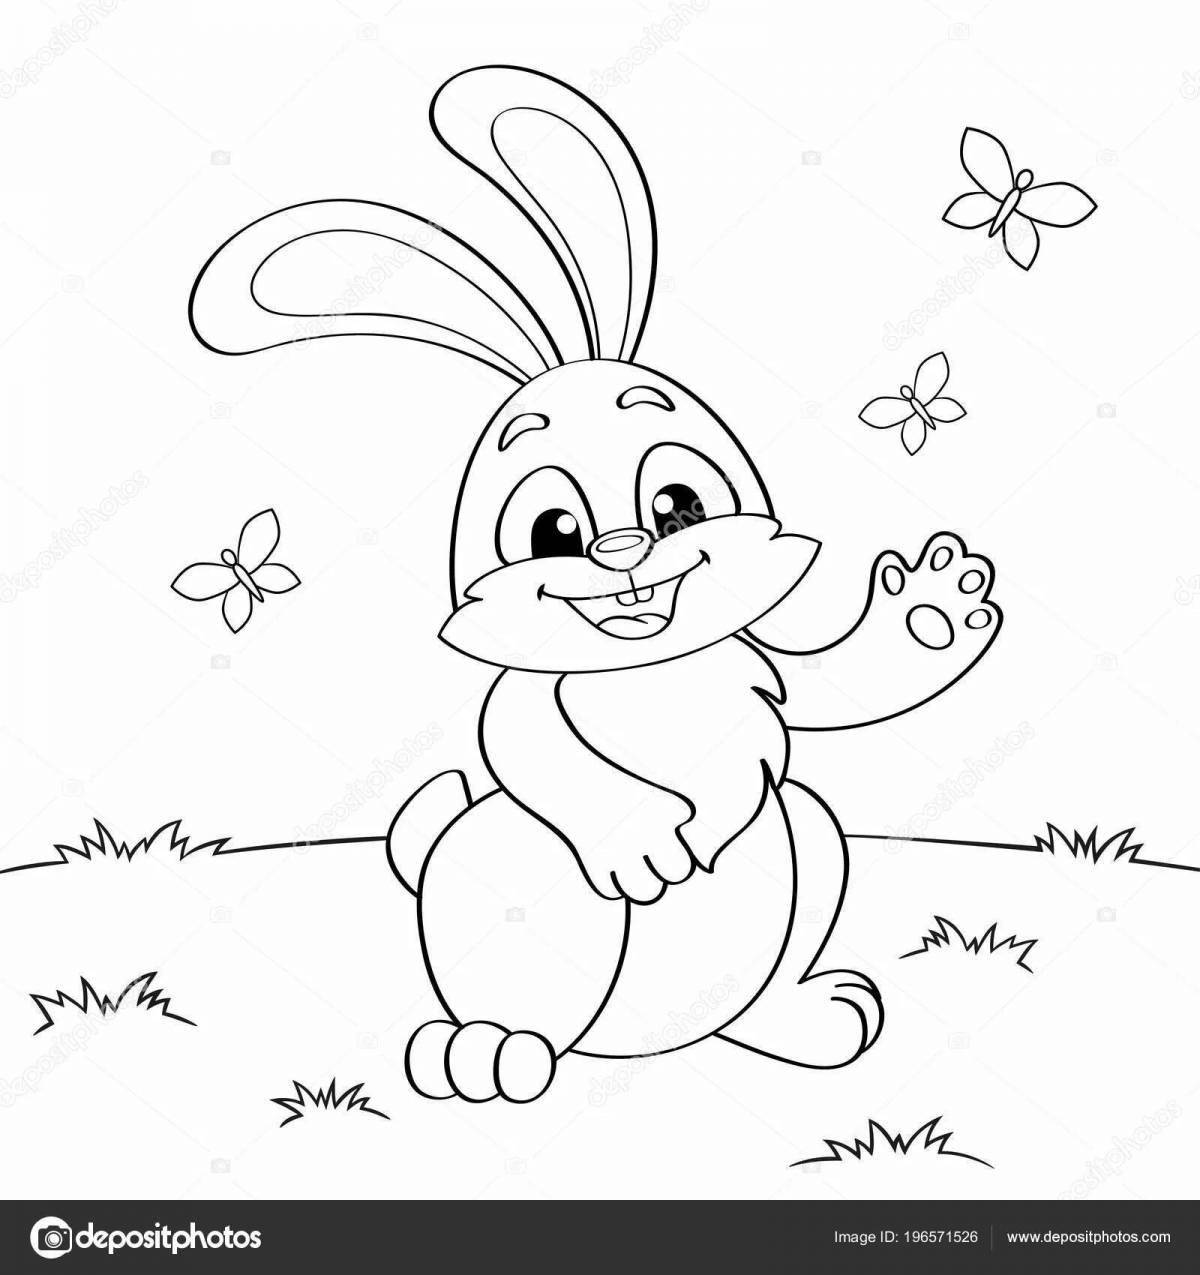 Joyful jumping bunny